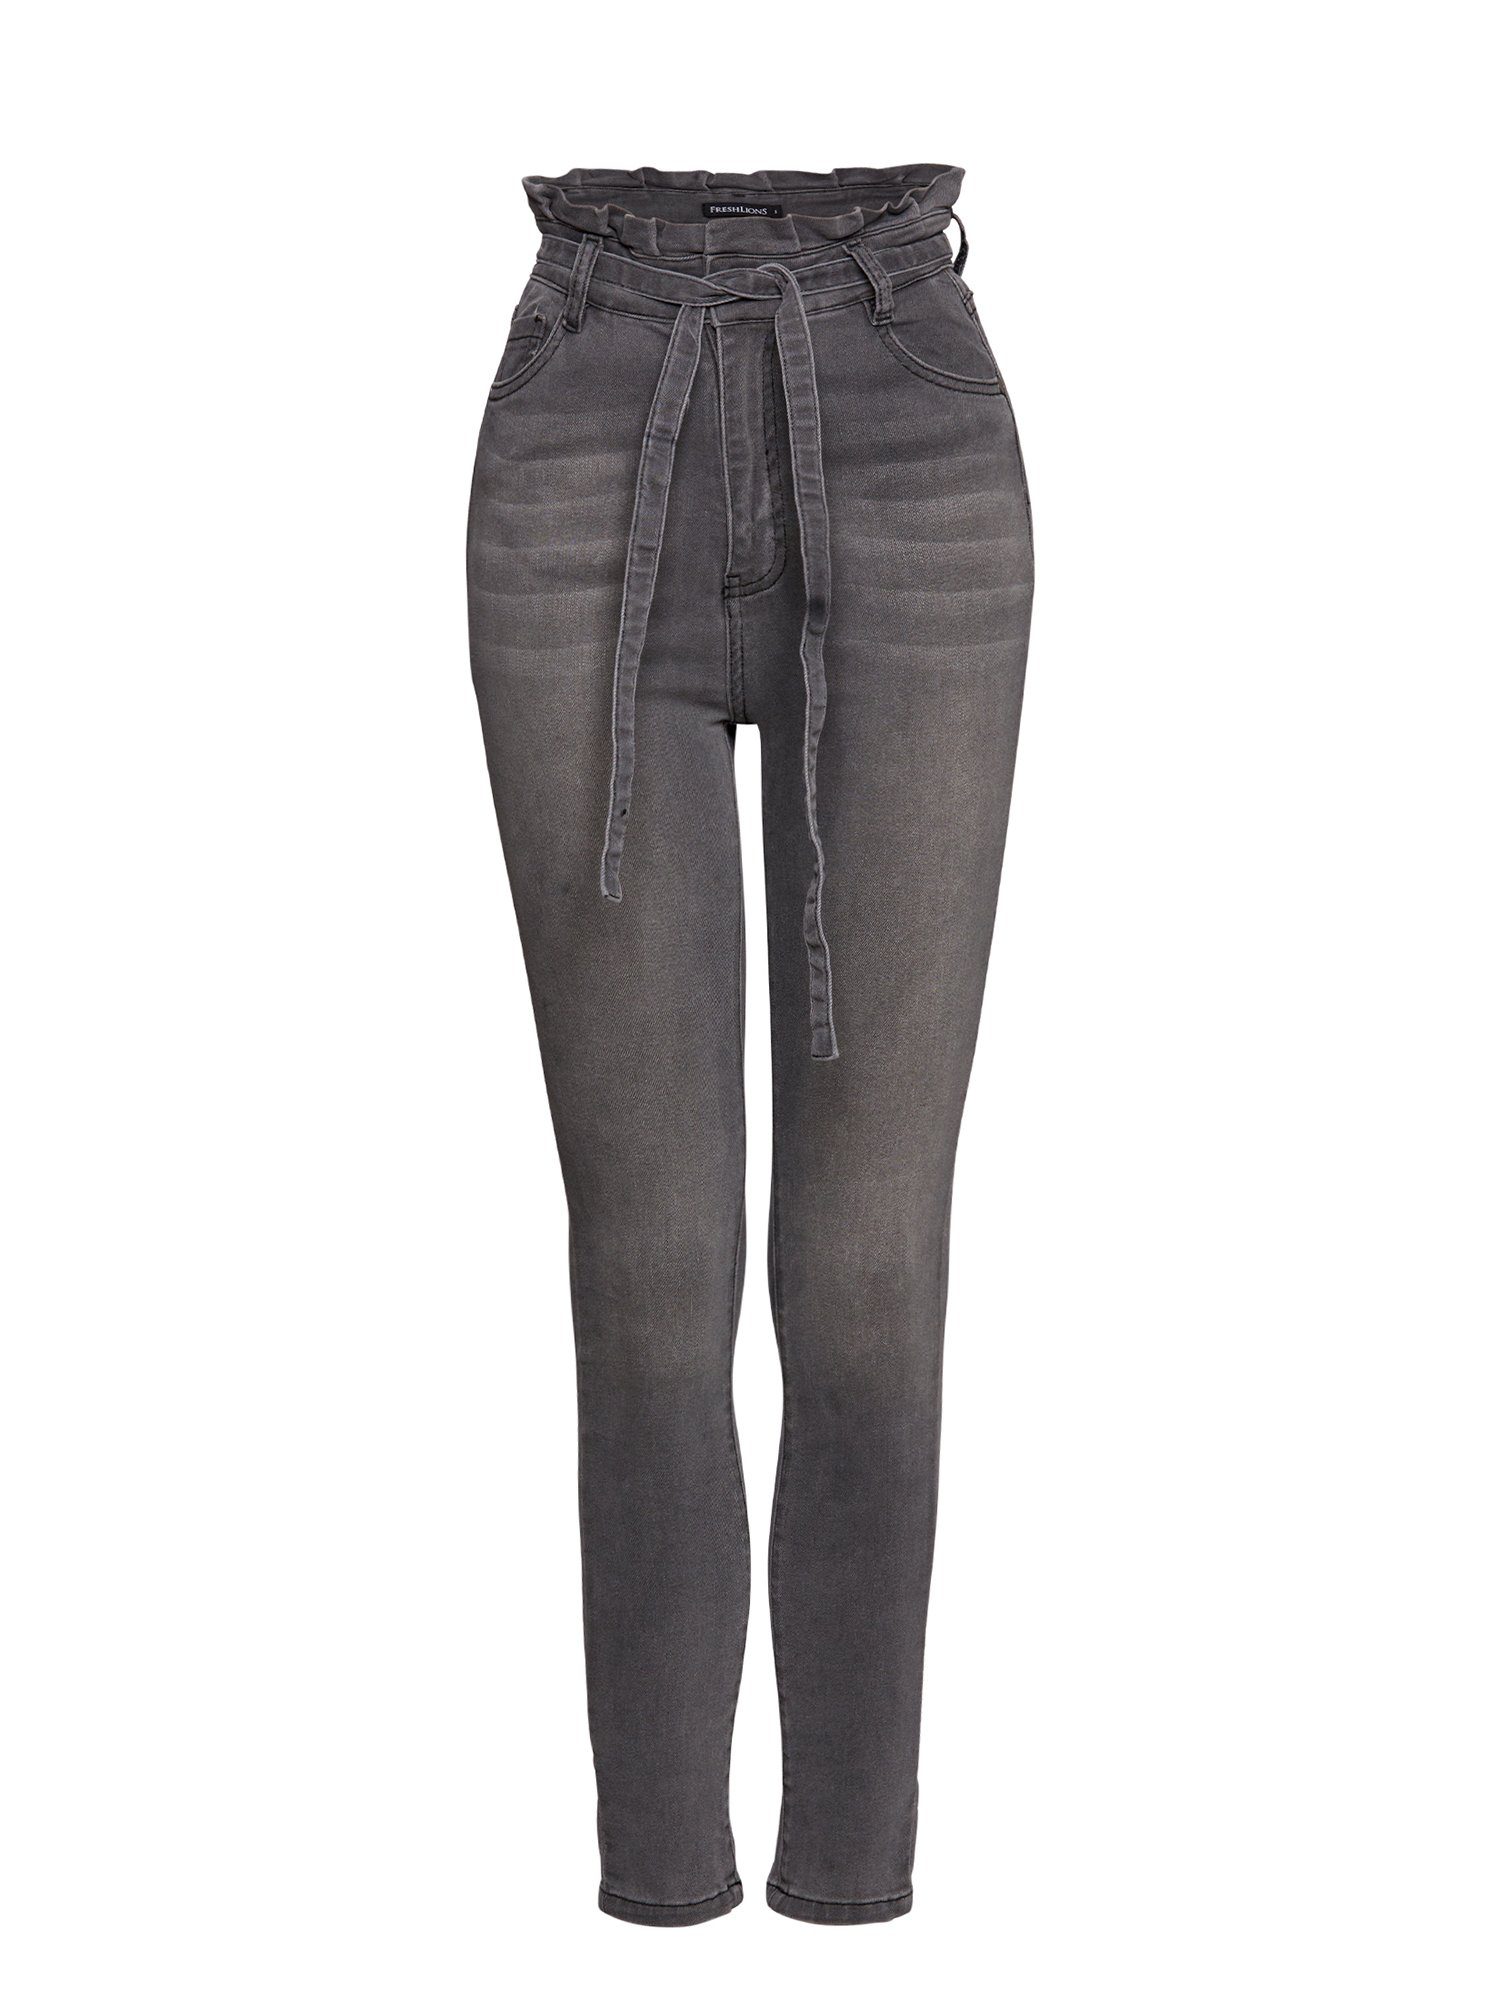 grau mit High-waist-Jeans Freshlions Bindegurt Jeans